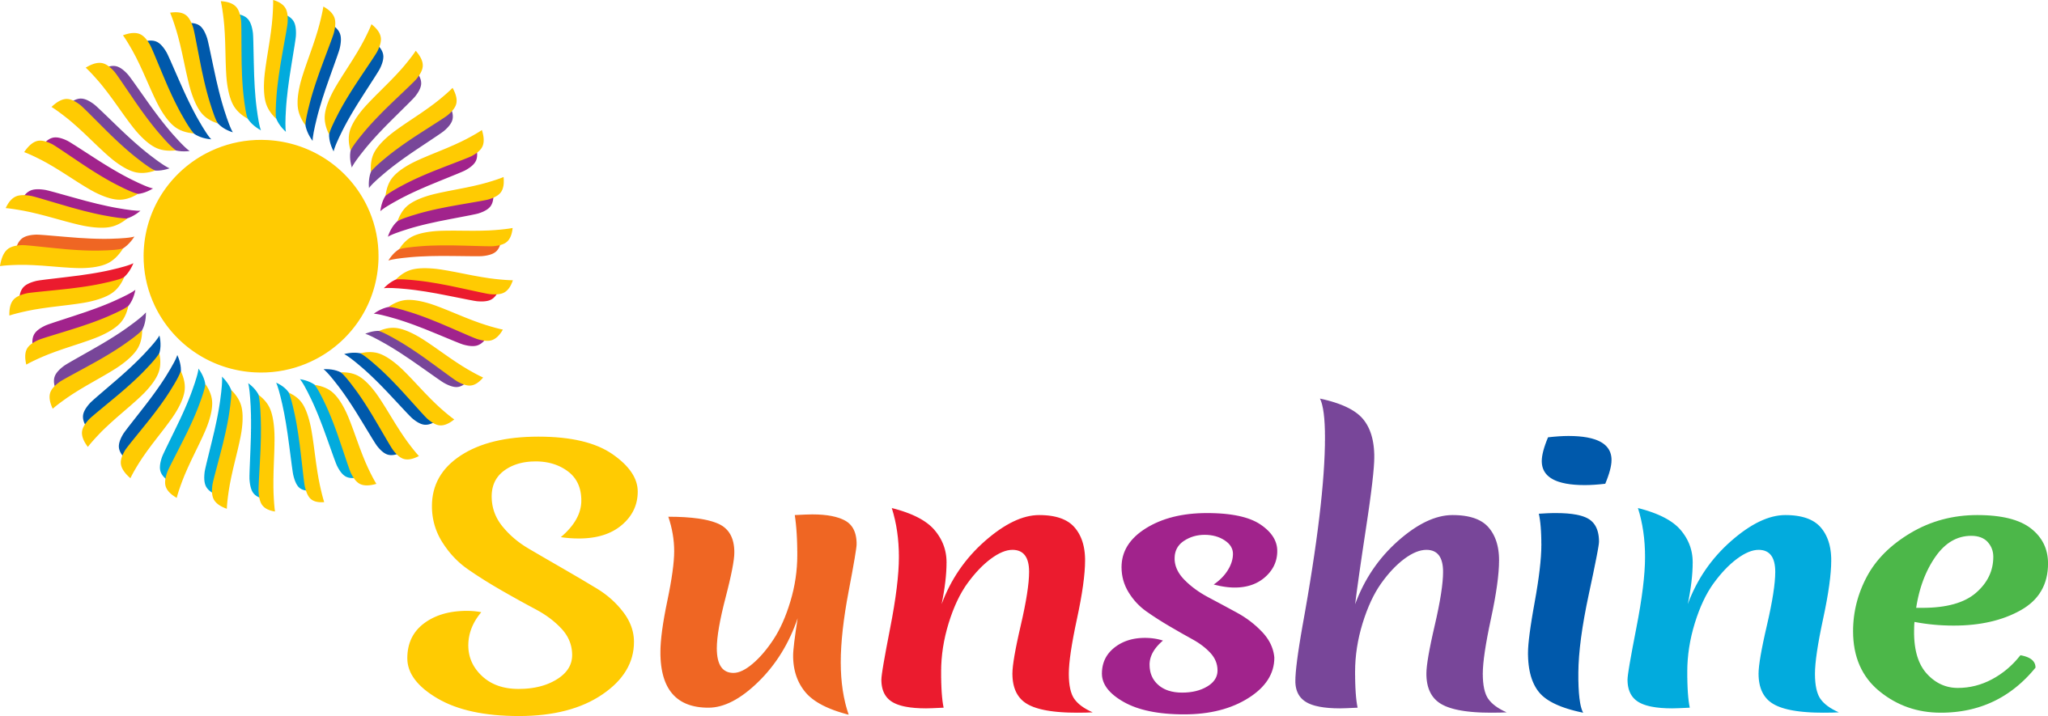 Sunshine logo